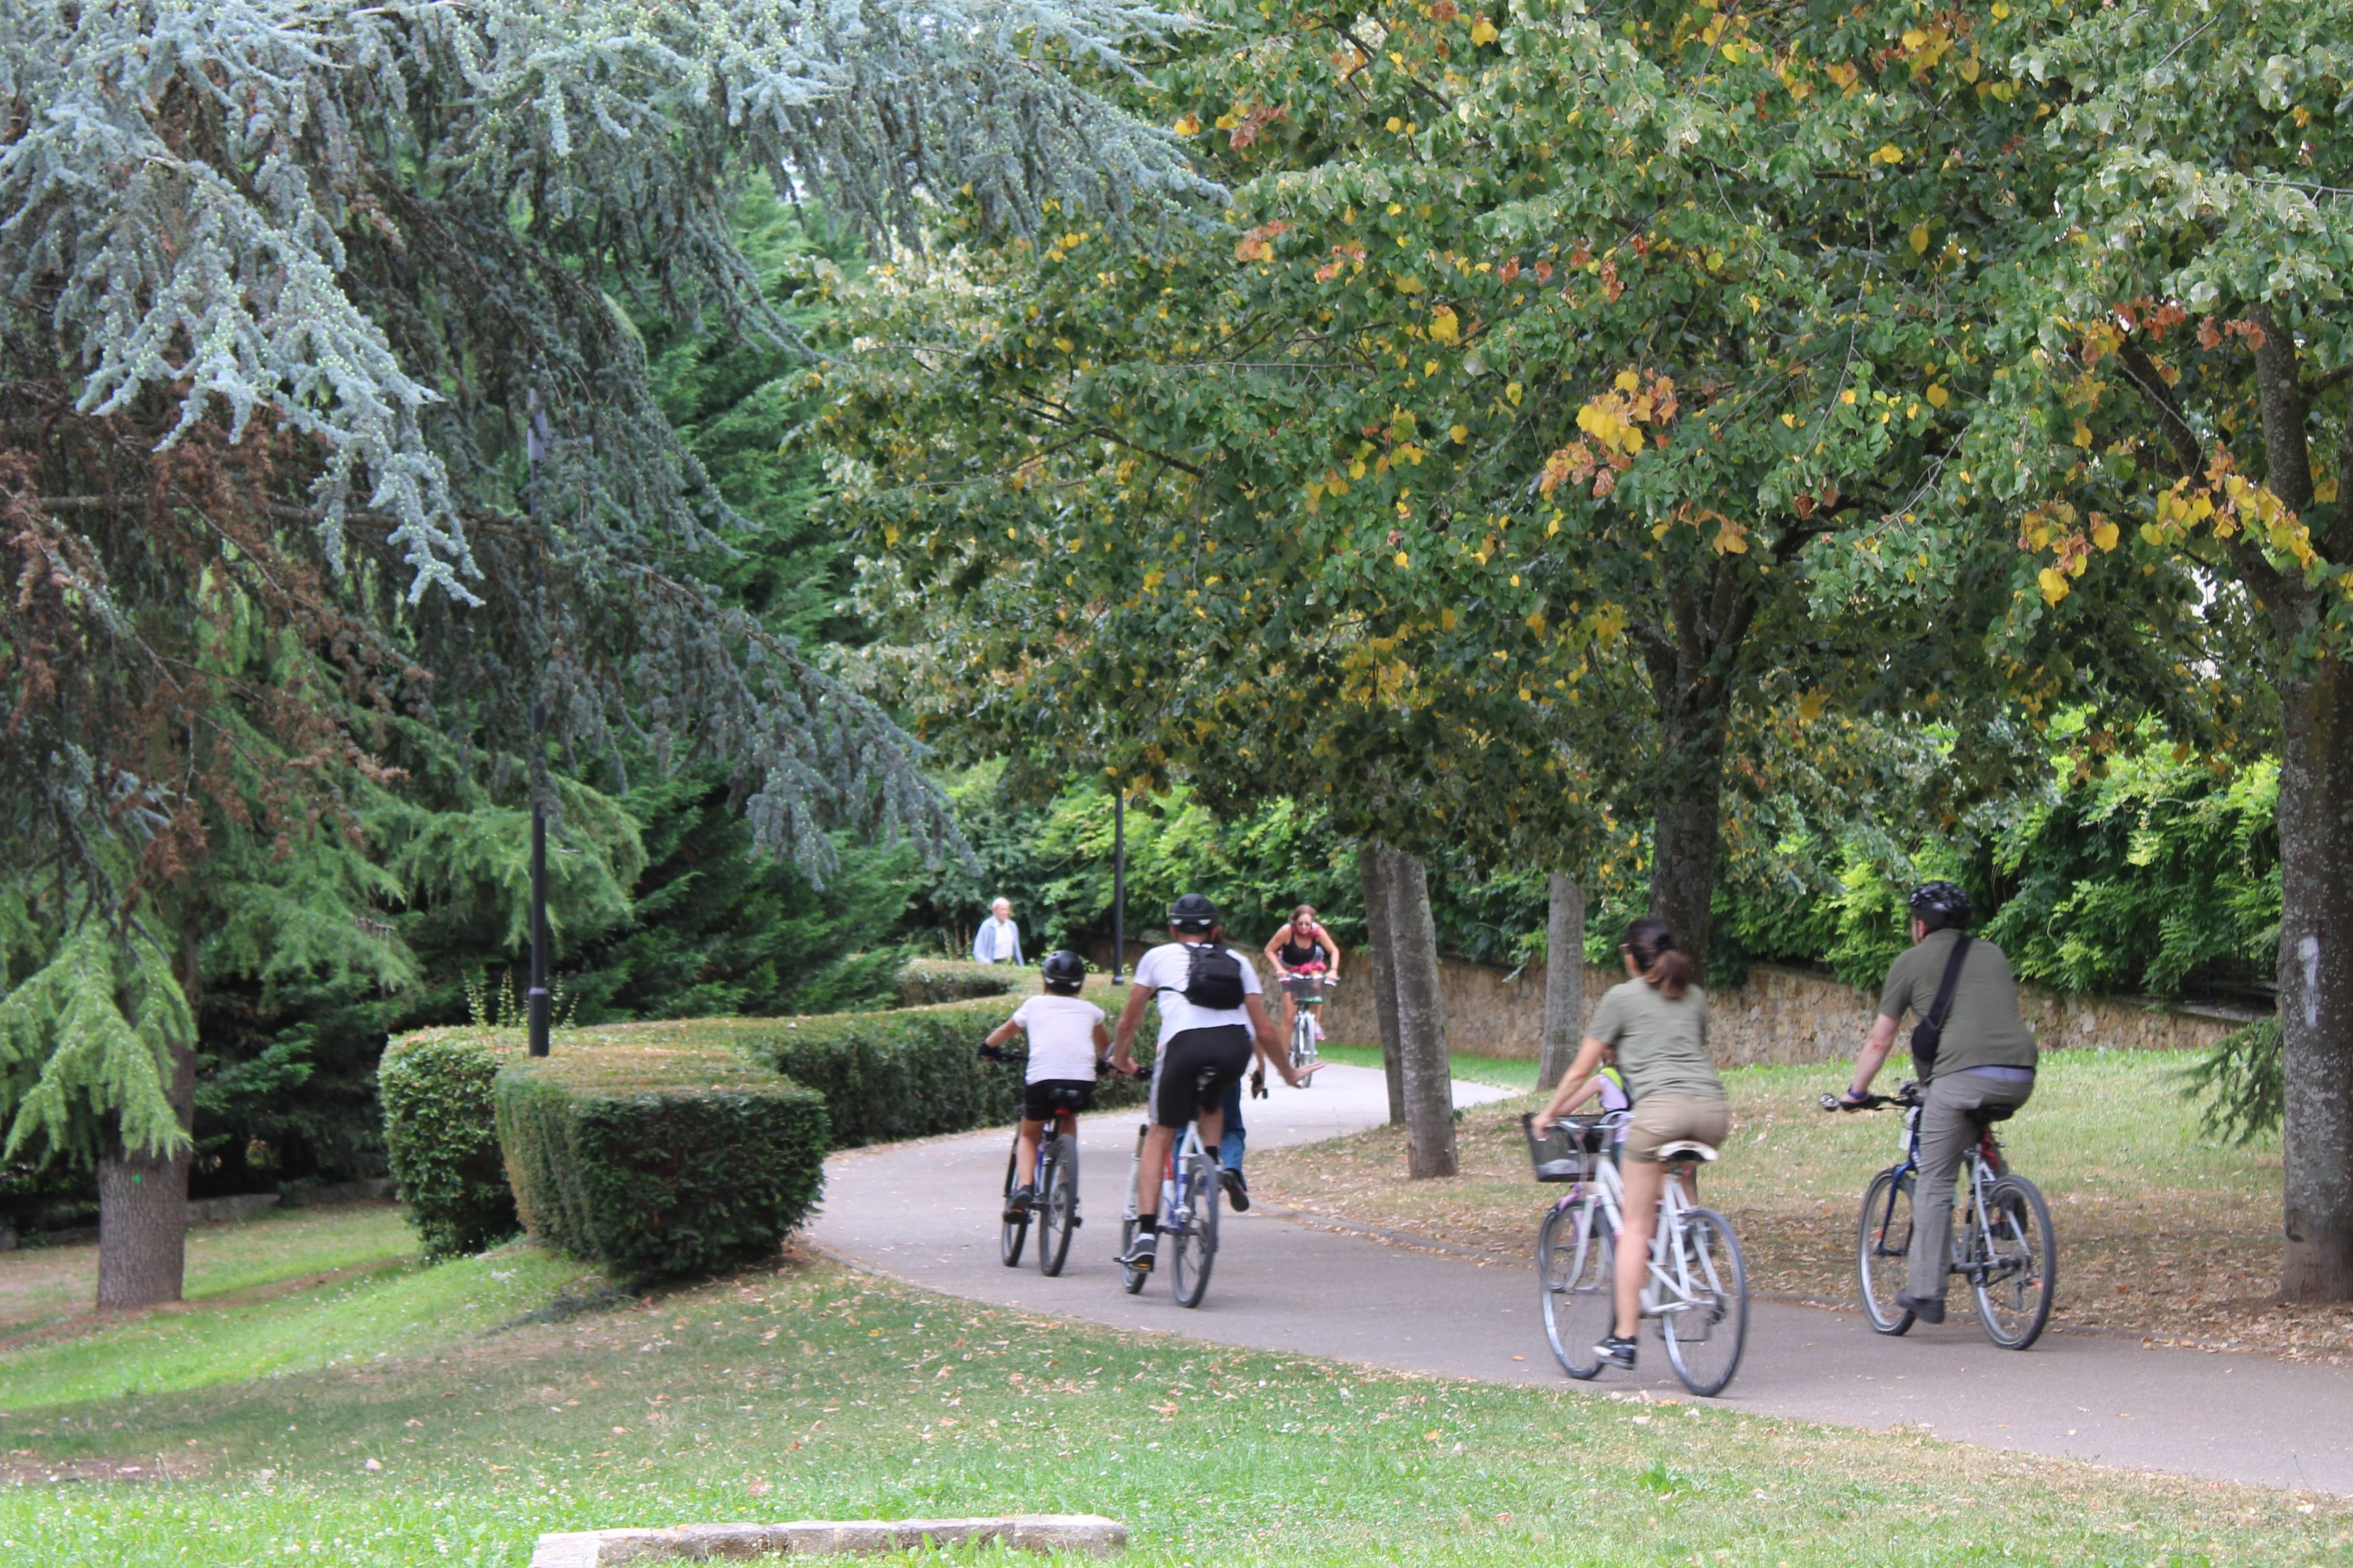 Sceaux (Hauts-de-Seine), en août. Entièrement aménagée pour les cyclistes, la coulée verte est le lieu idéal pour une promenade en famille. LP/Yoann Bourgin